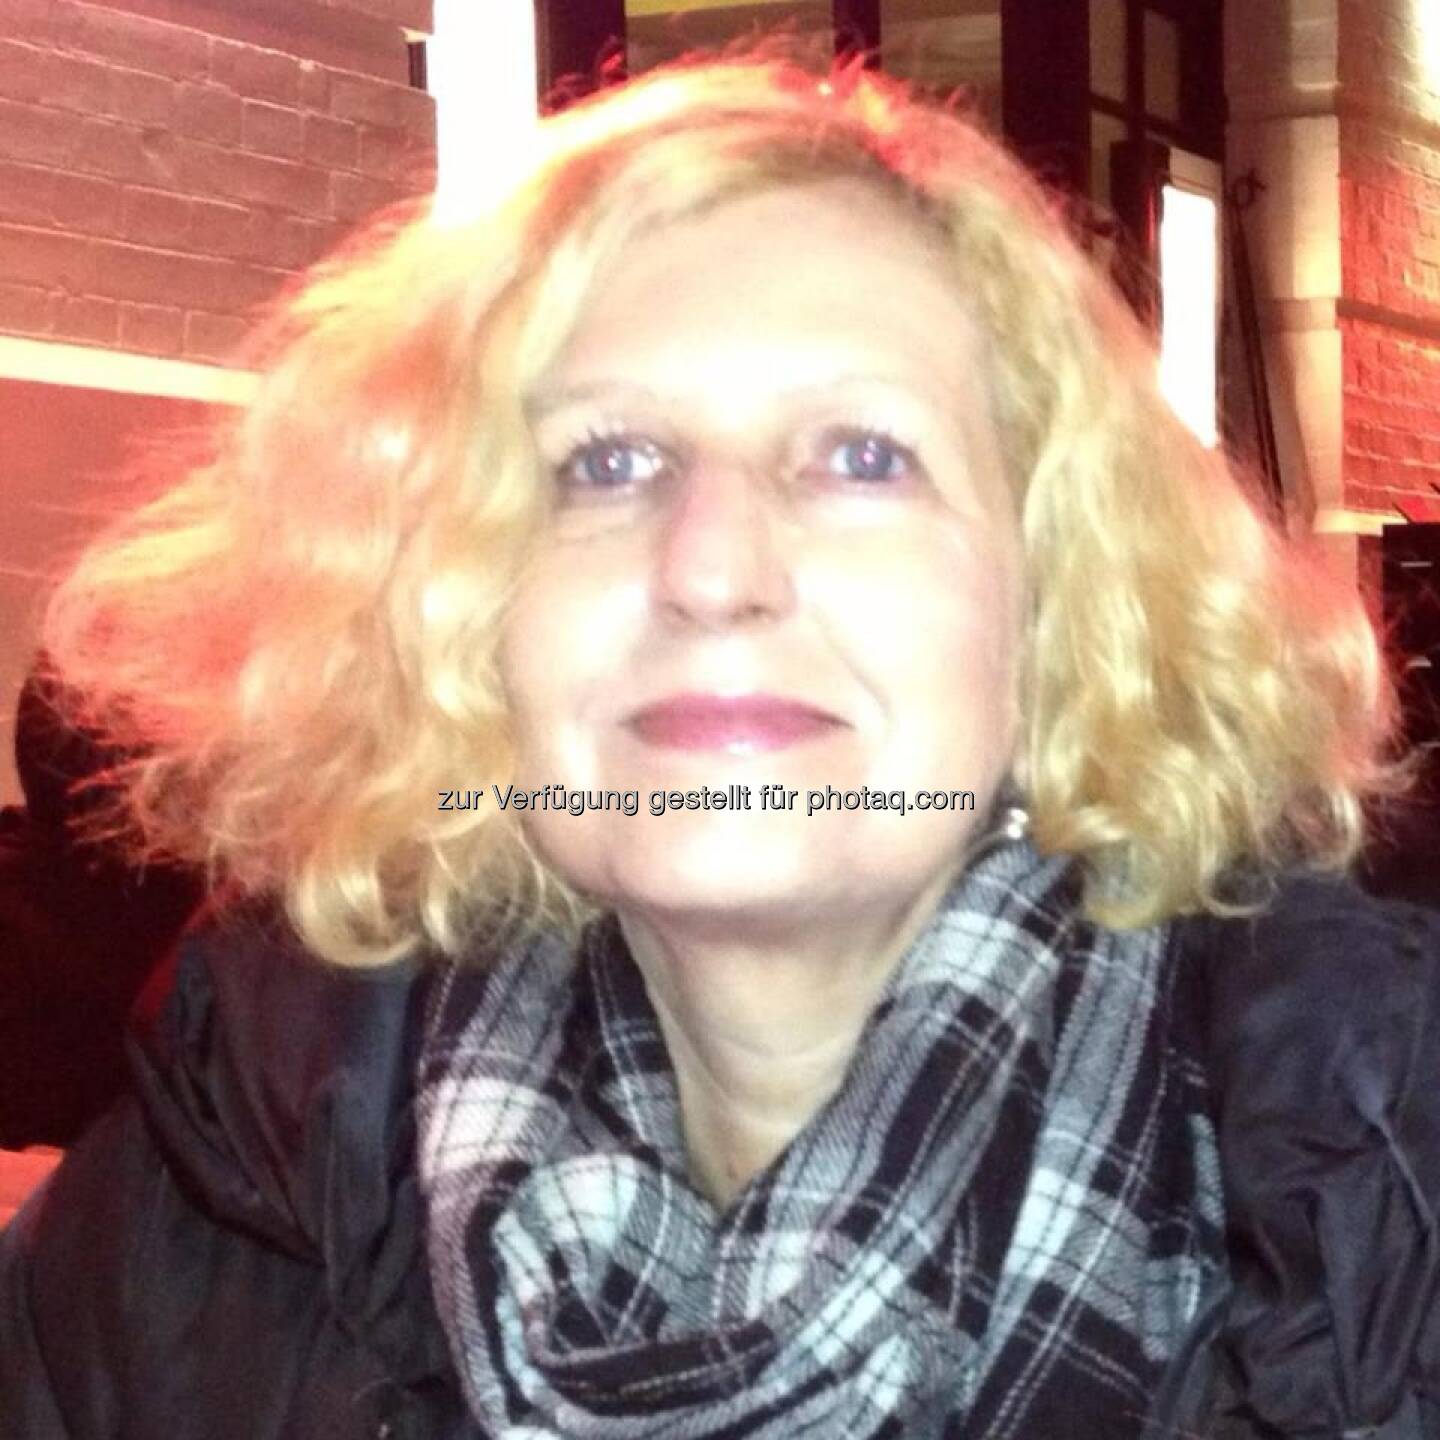 Angela Sellner, Wirtschaftsjournalistin (23. Februar) - finanzmarktfoto.at wünscht alles Gute!